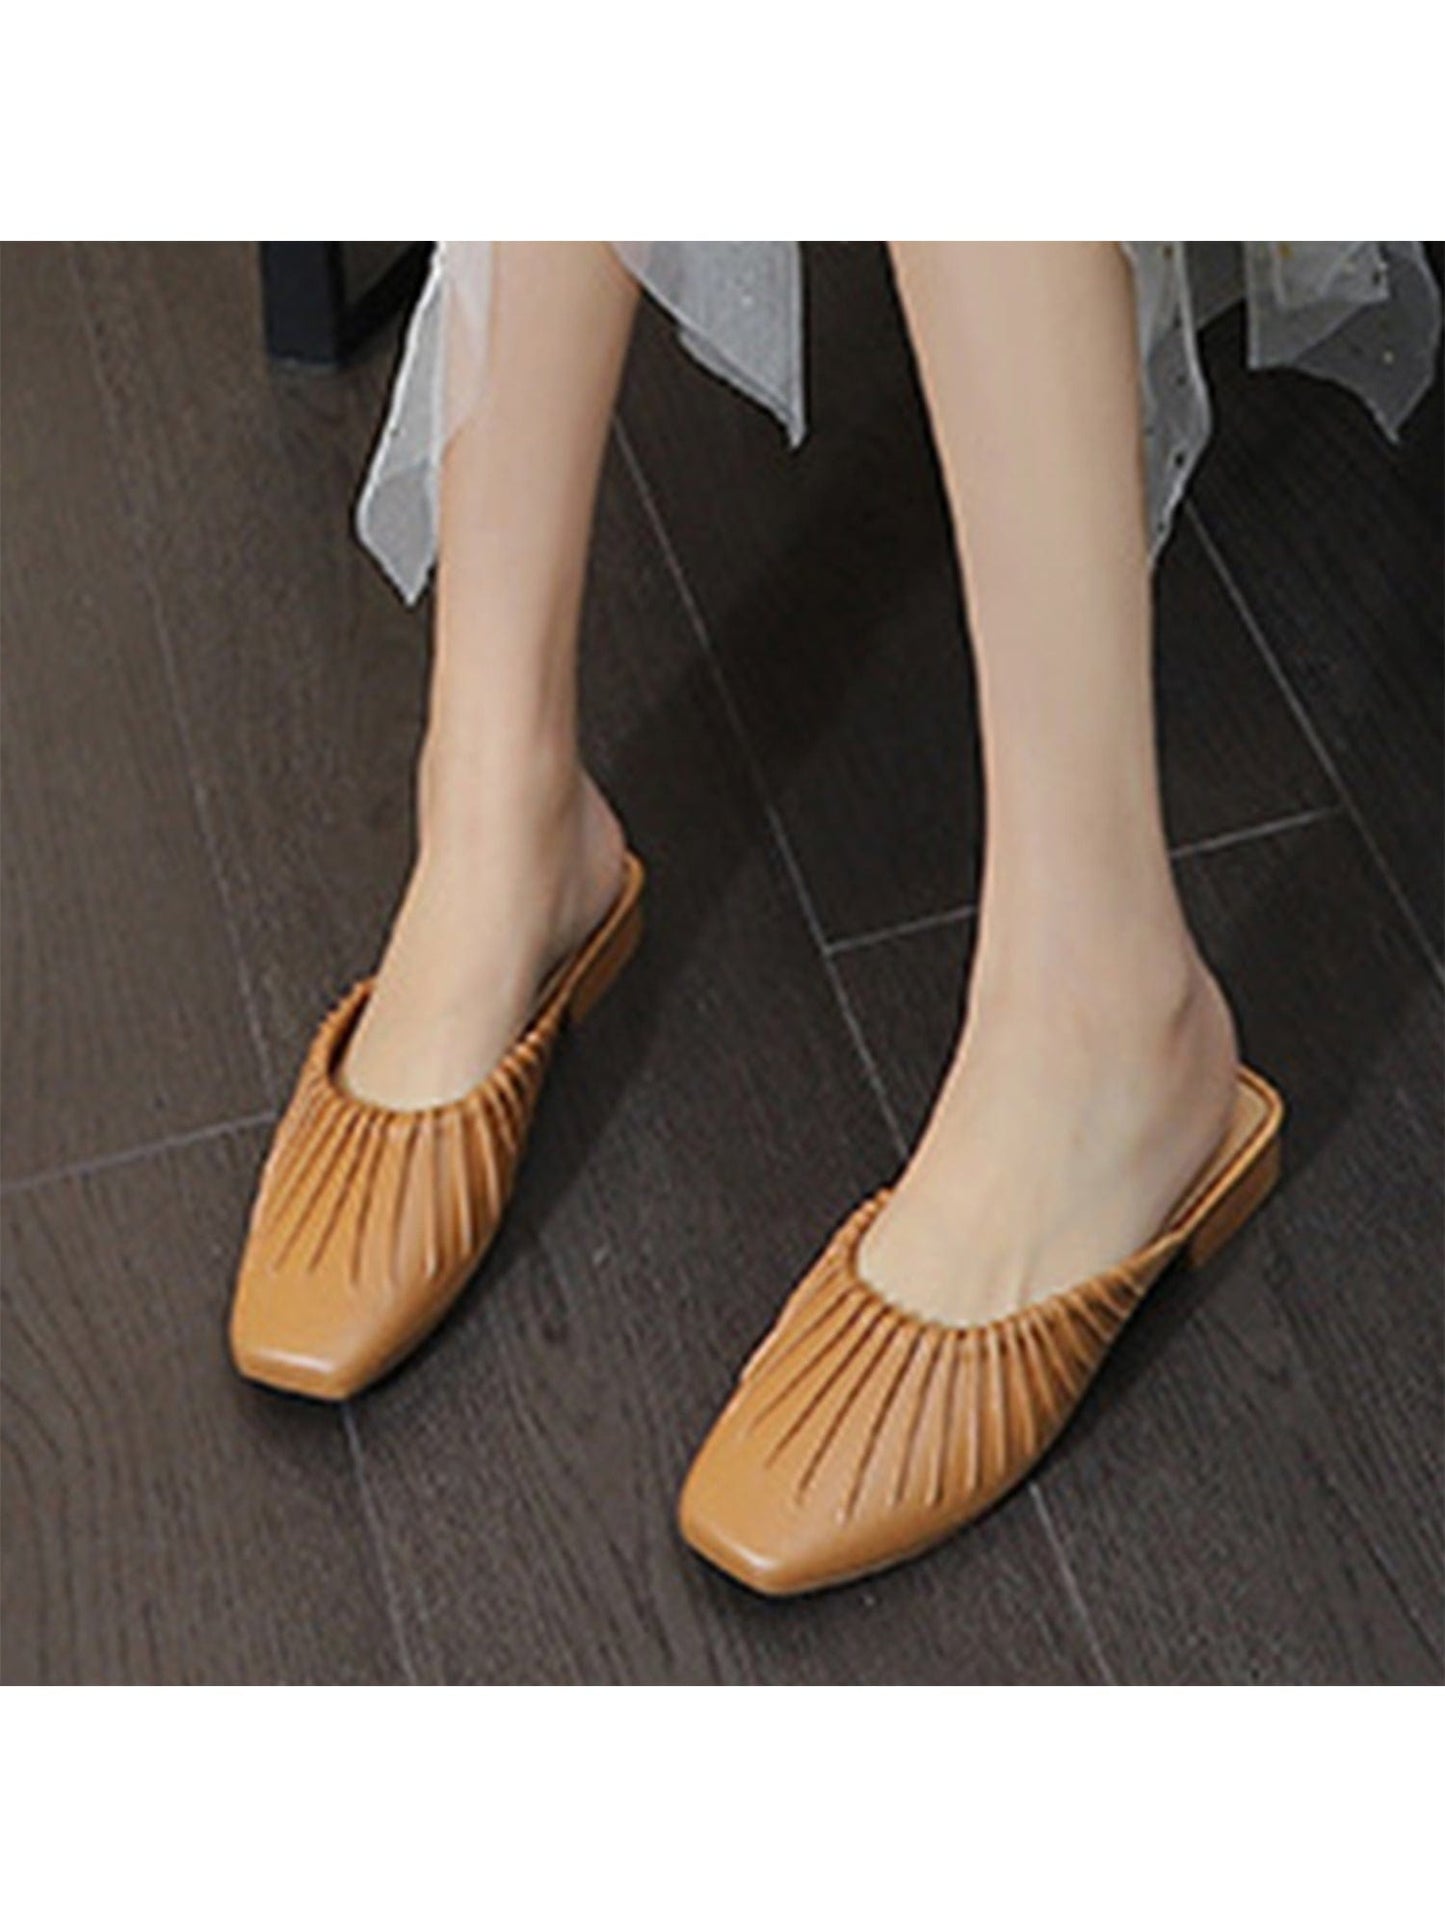 THATLILSHOP Fashion Sandals